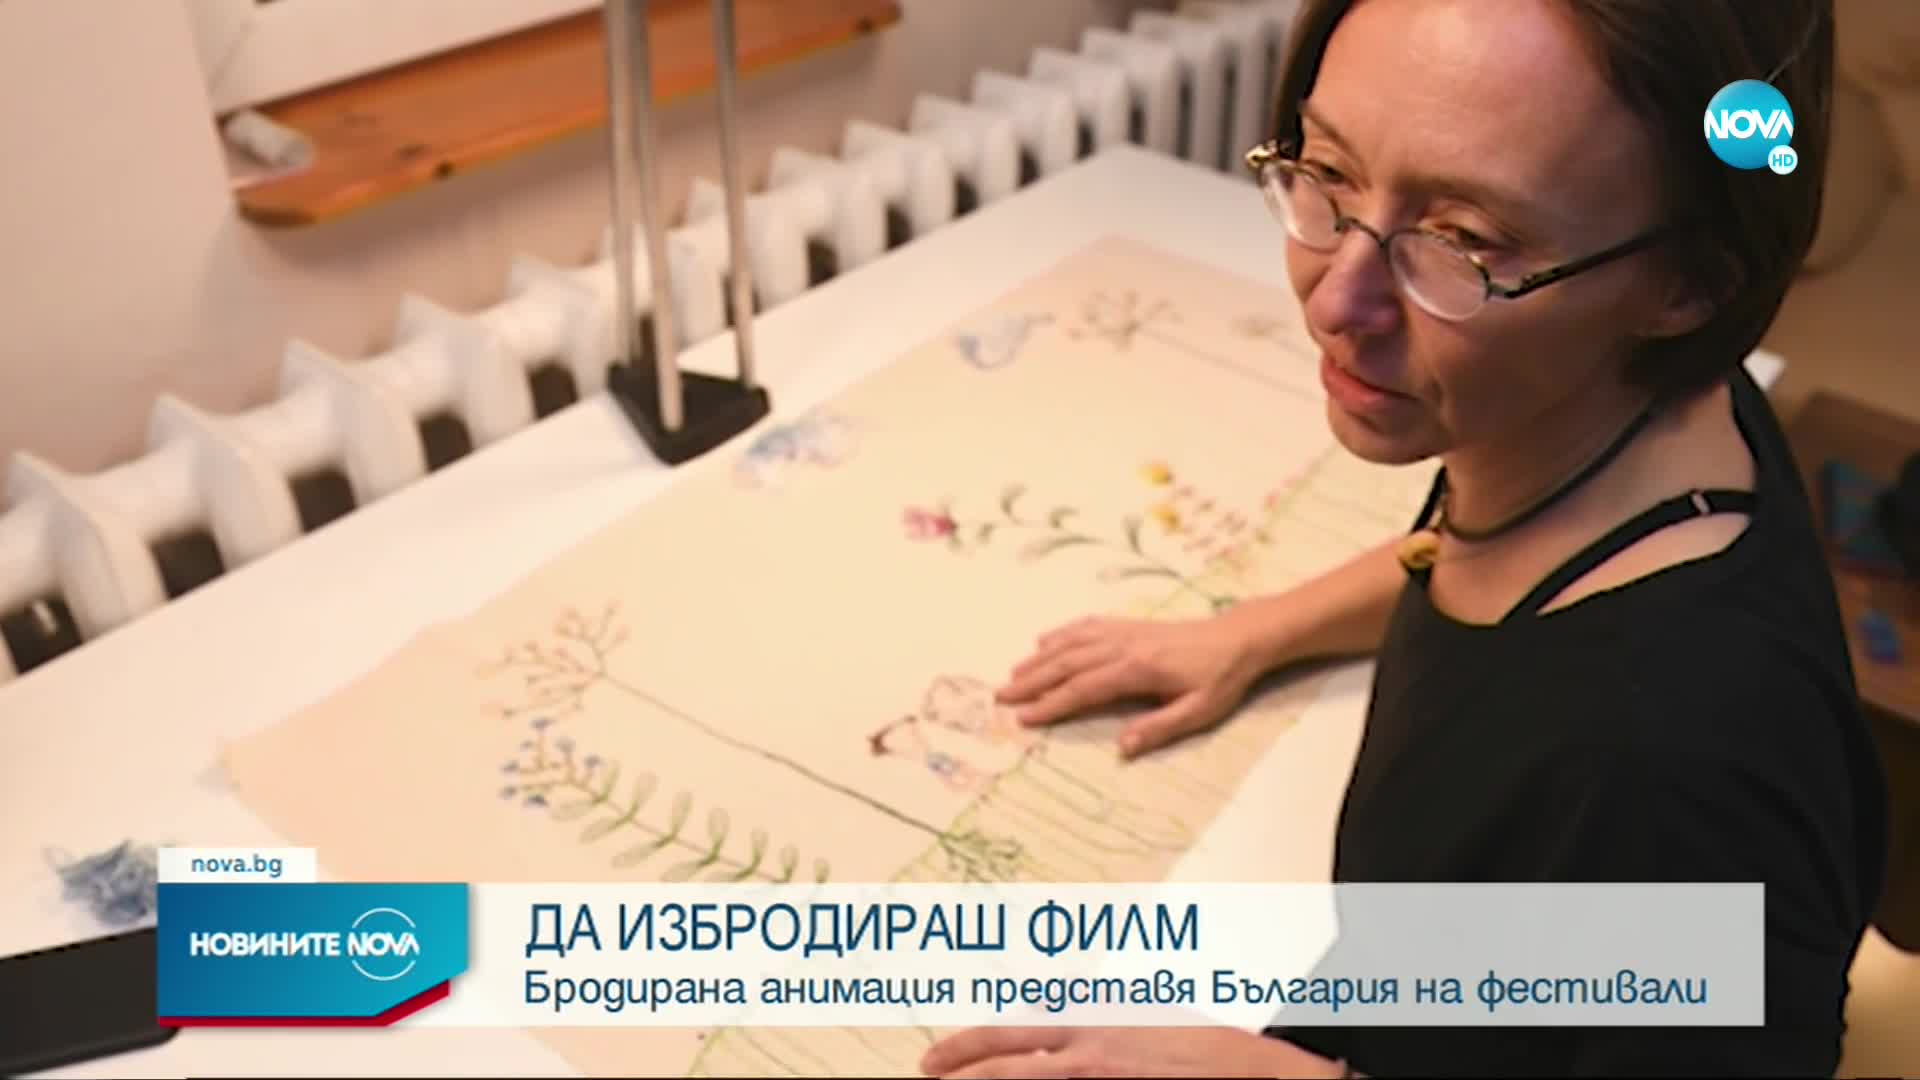 Бродирана анимация представя България на фестивали